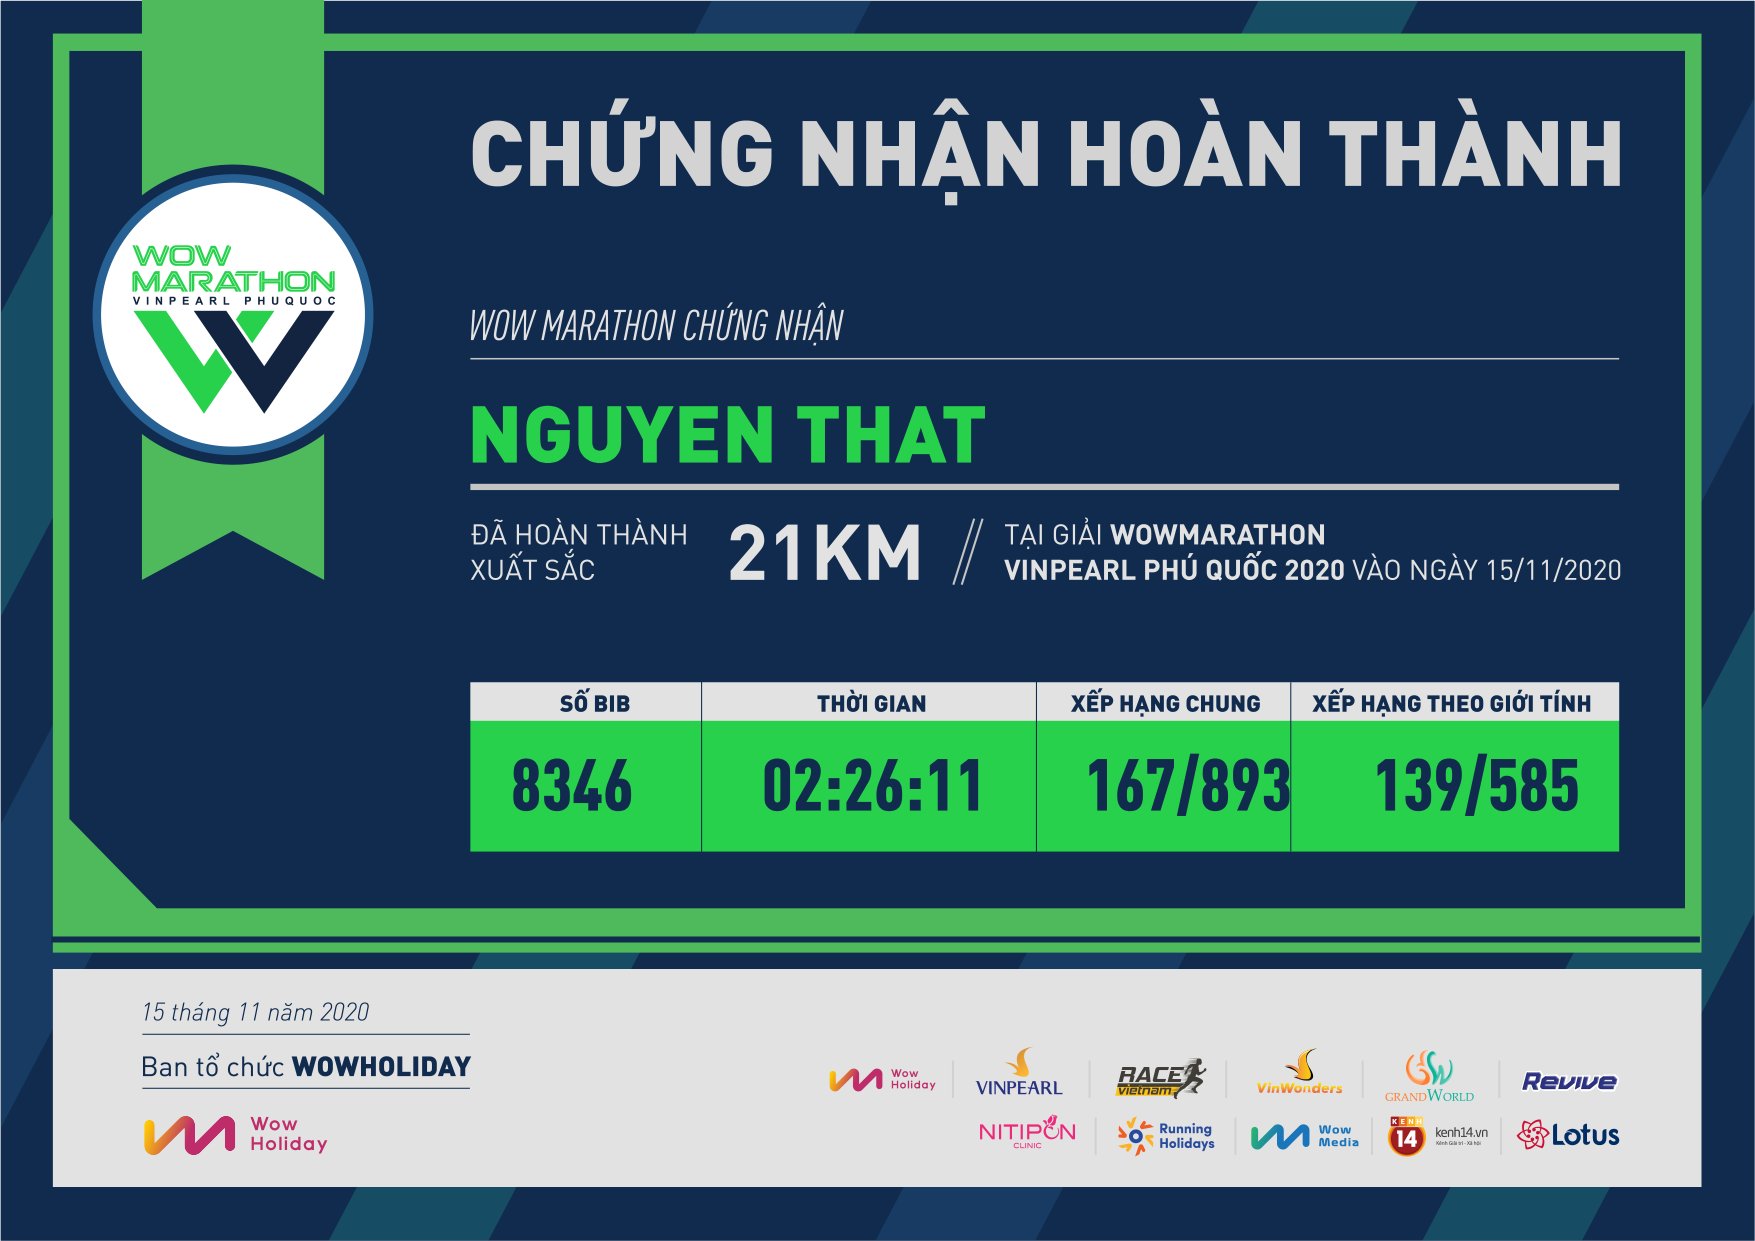 8346 - Nguyen That